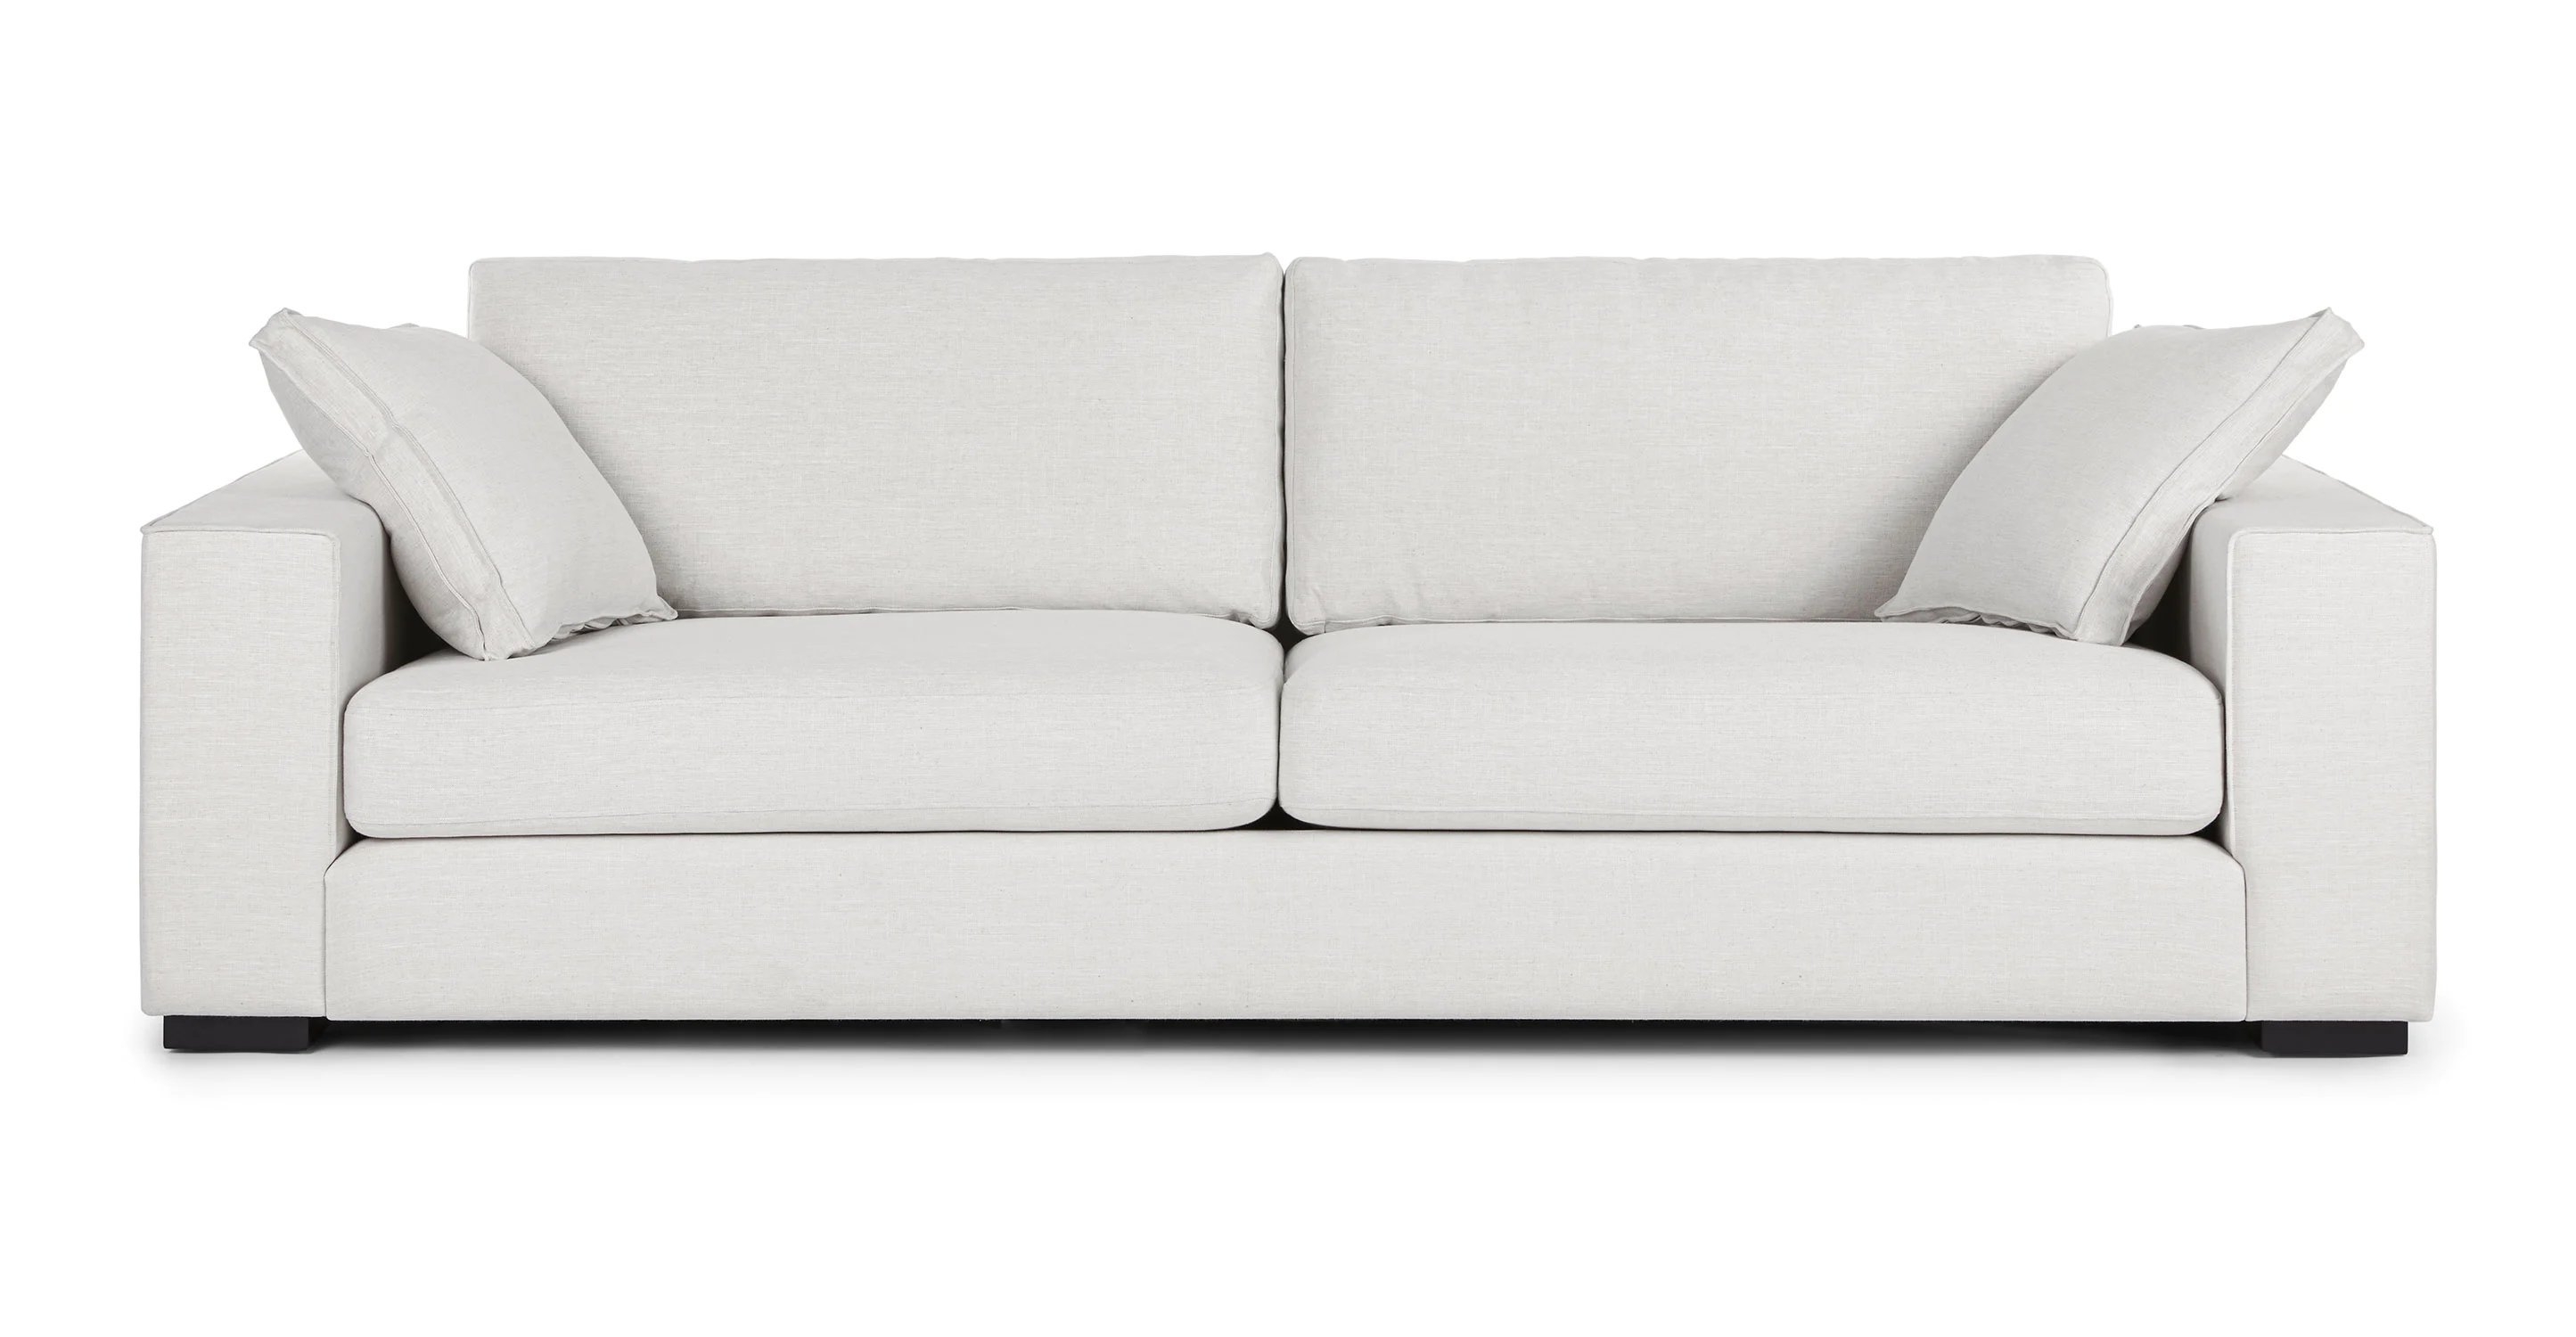 Sitka Sofa, Quartz White - Image 0